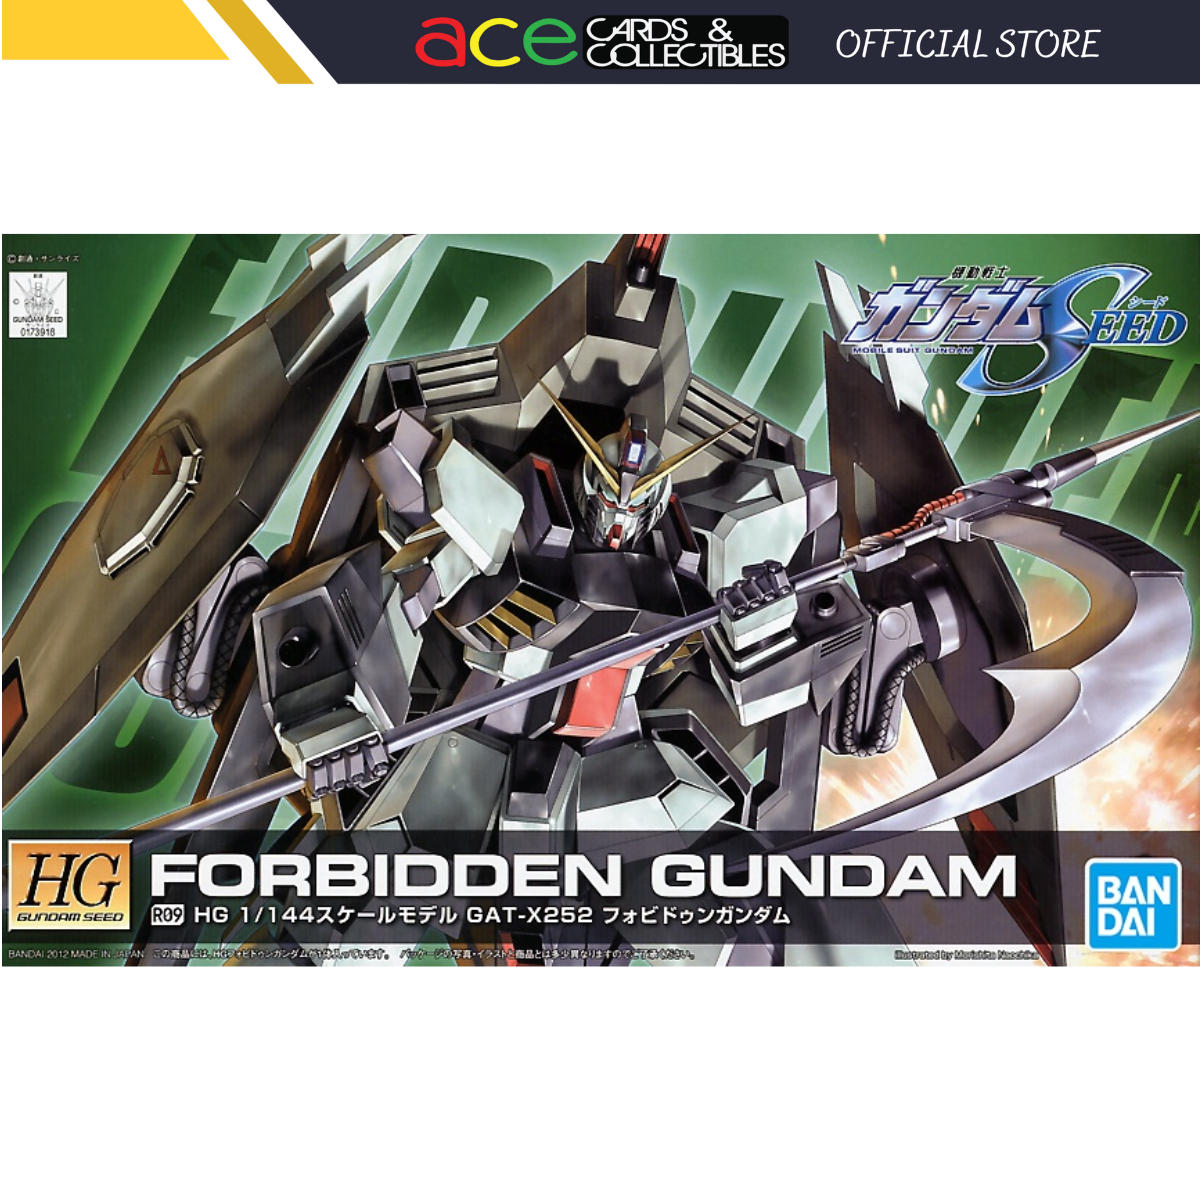 Gunpla HG/1/144 Forbidden Gundam-Bandai-Ace Cards & Collectibles